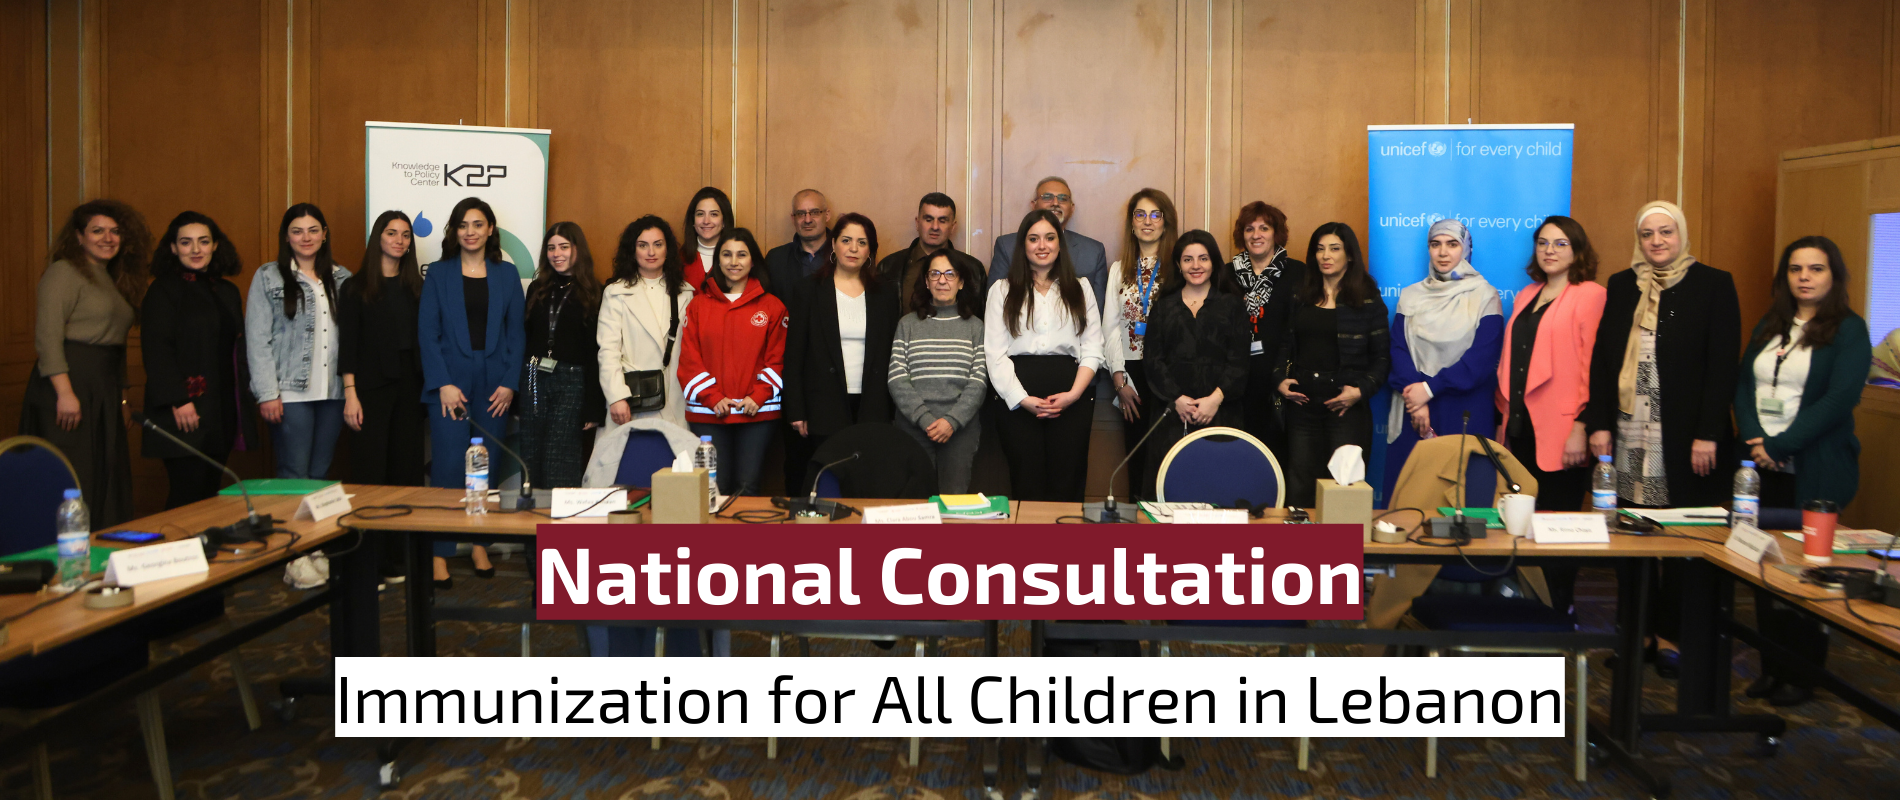 National Consultation - Immunization for All Children in Lebanon